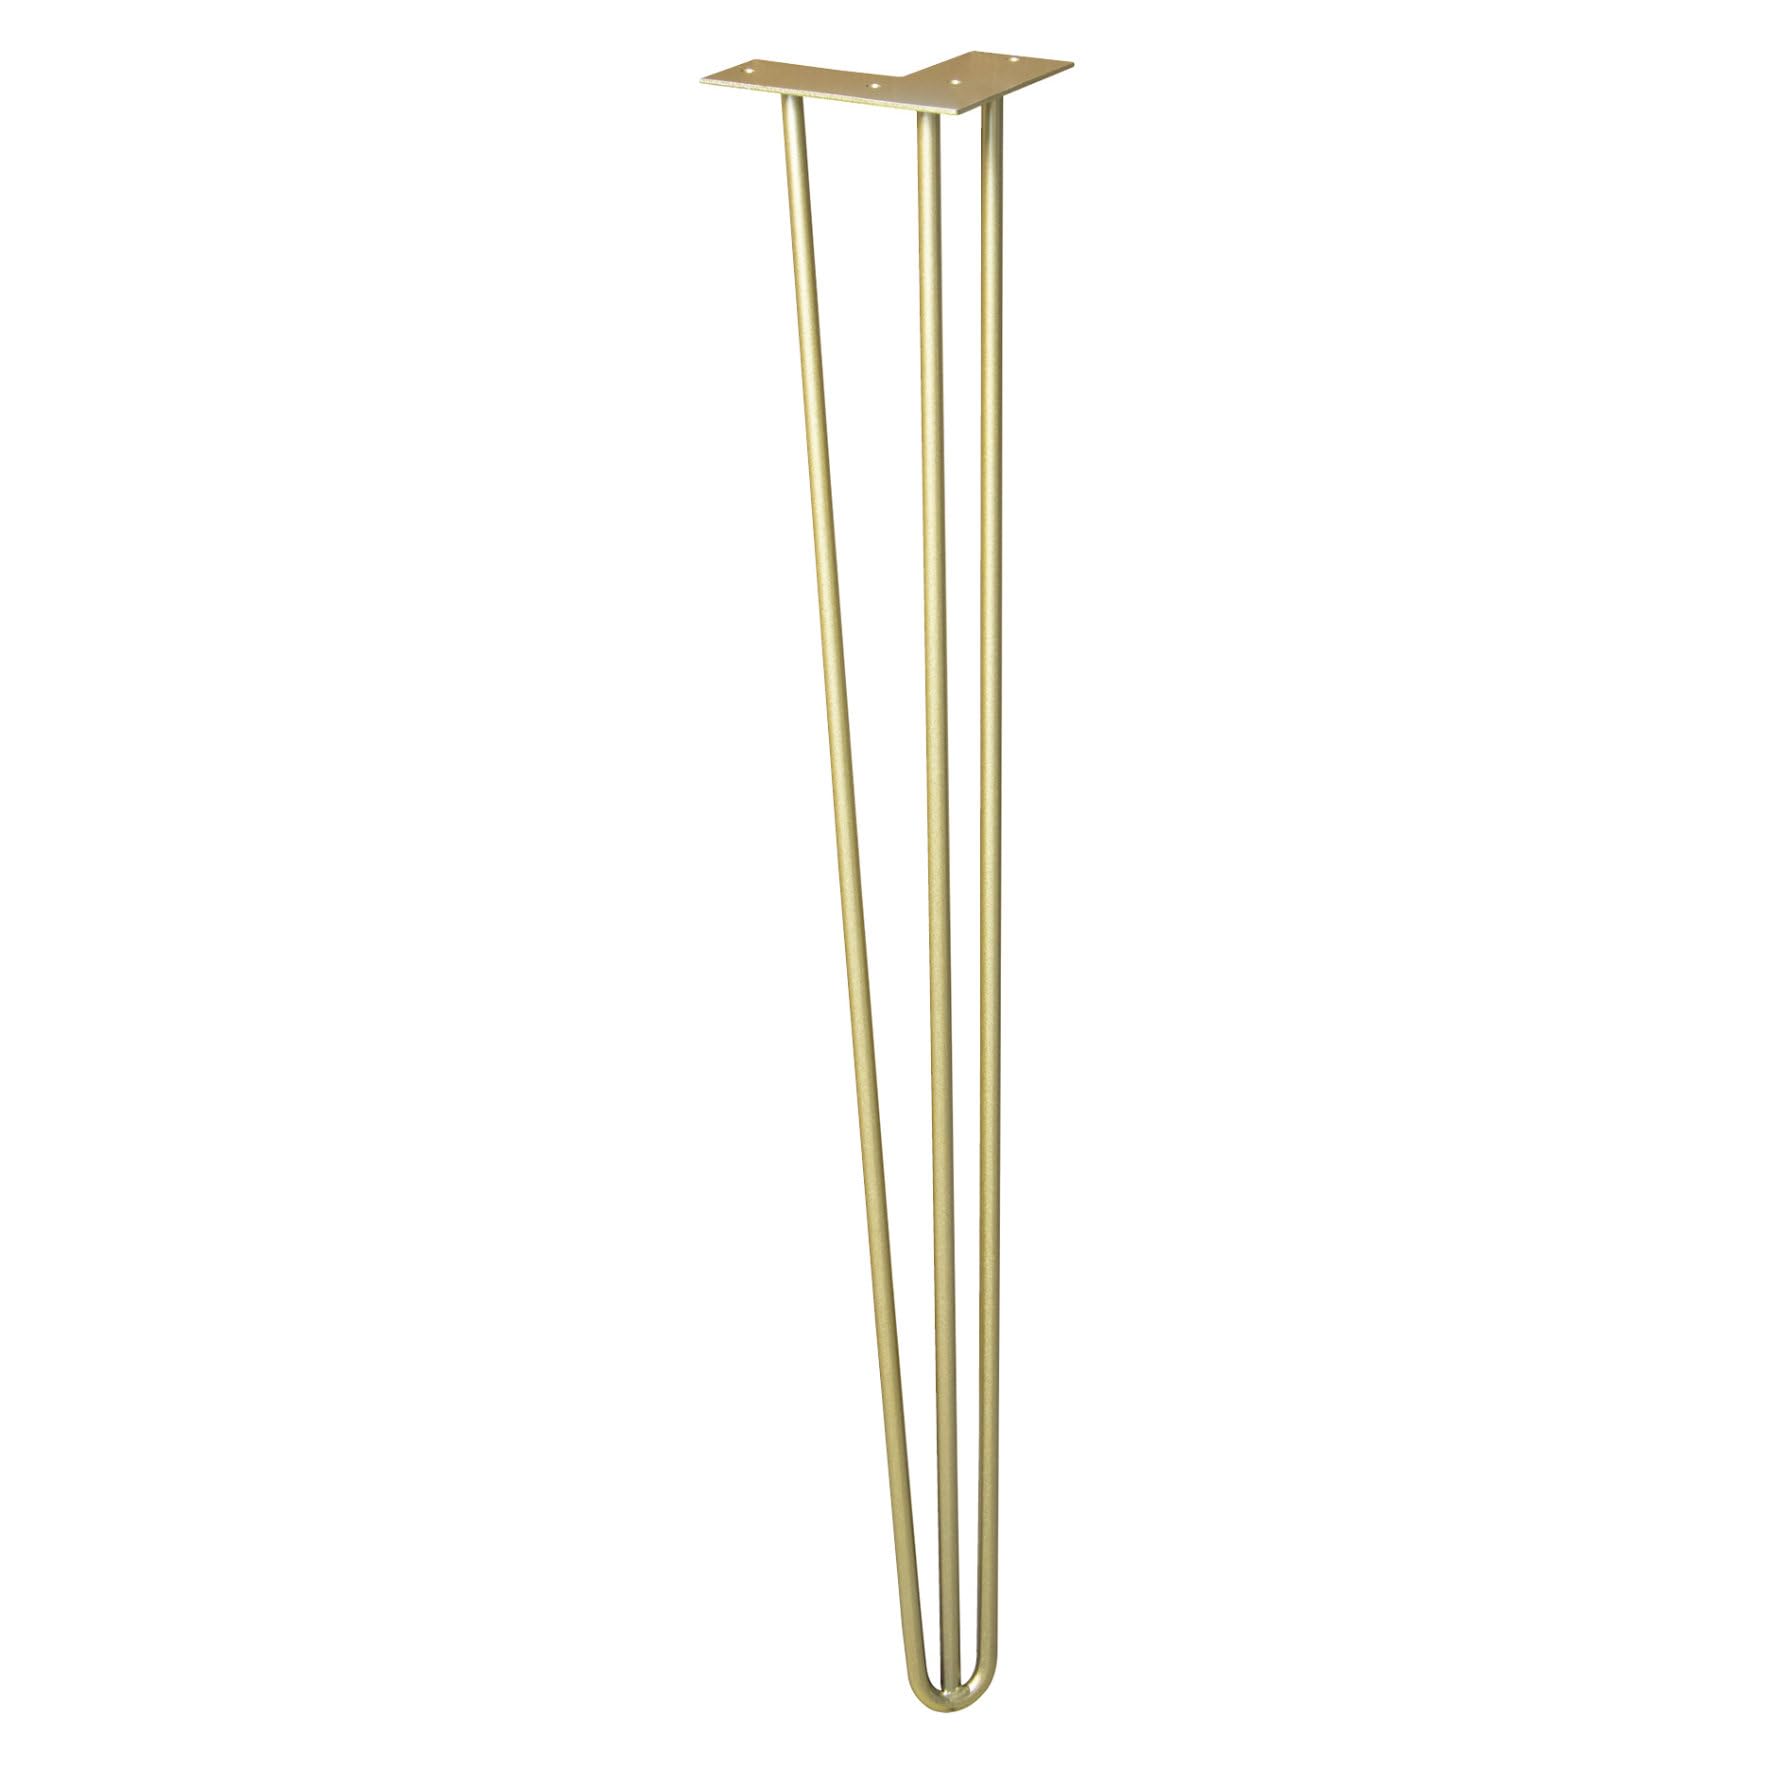 Wagner Möbelbein/Tischbein/Möbelfuß - Hairpin Leg - Retro Style - Stahl pulverbeschichtet goldfarben, 12 x 12 x 71 cm, Bein konisch/schräg verlaufend, integrierte Anschraubplatte - 12827501